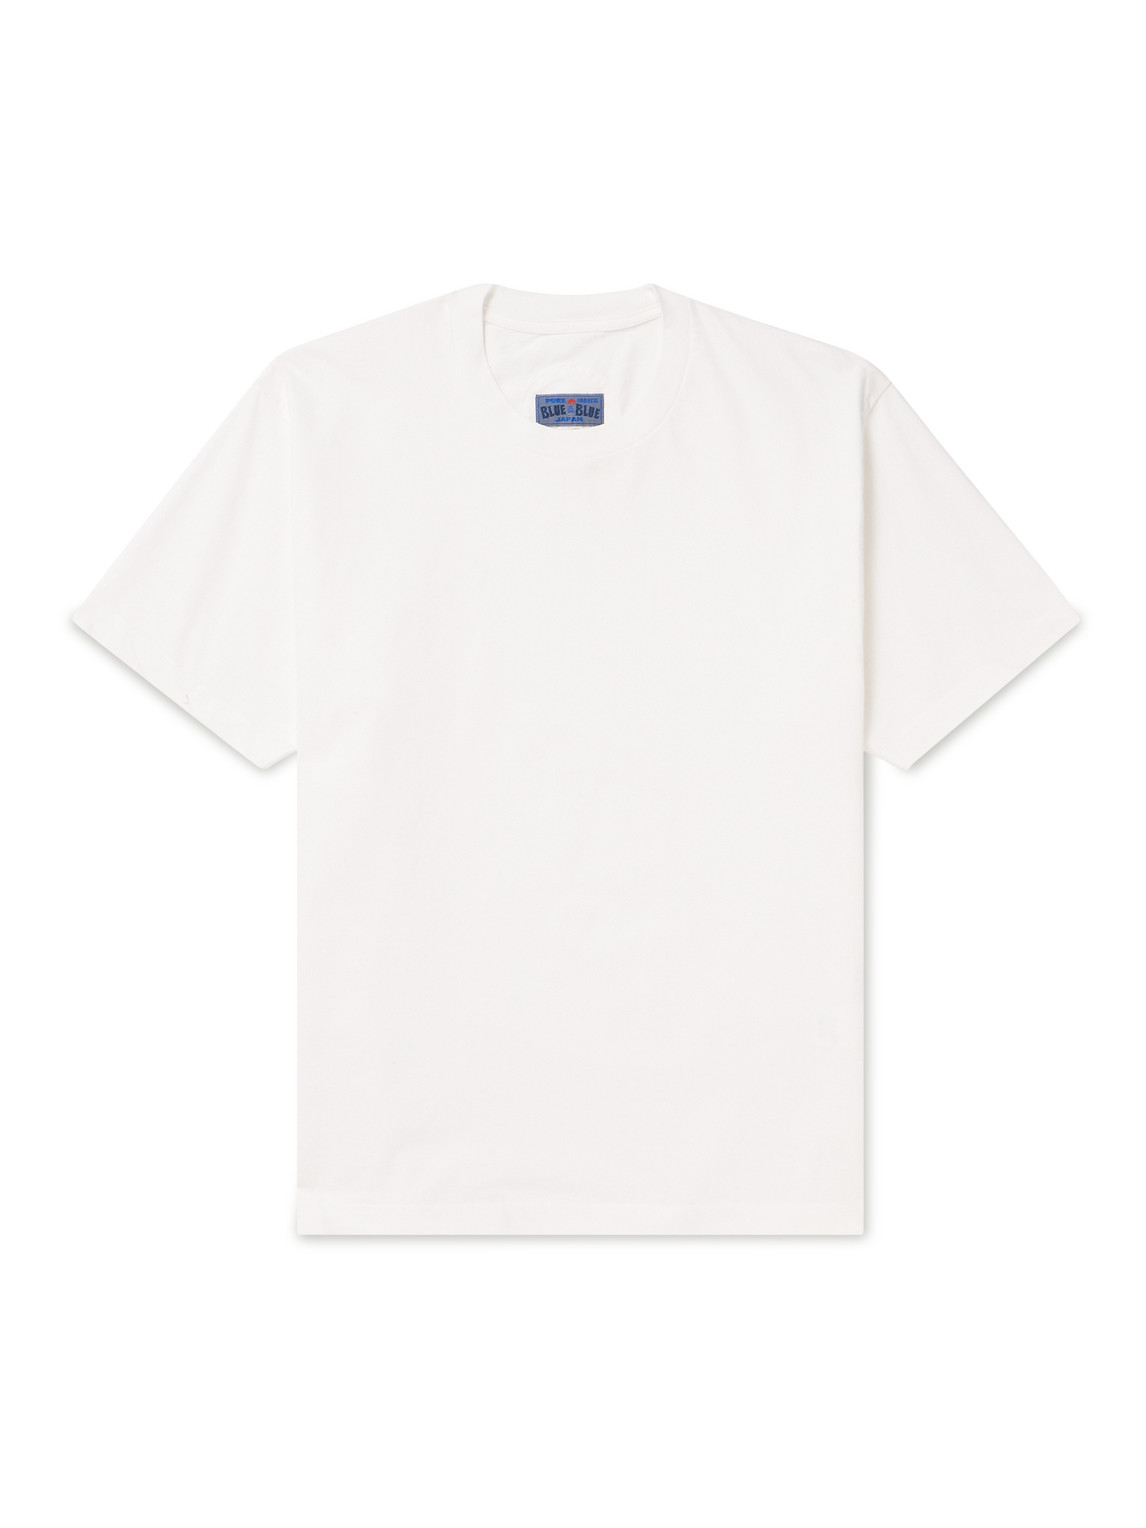 Cotton Louis Vuitton x Supreme T-shirts for Men - Vestiaire Collective